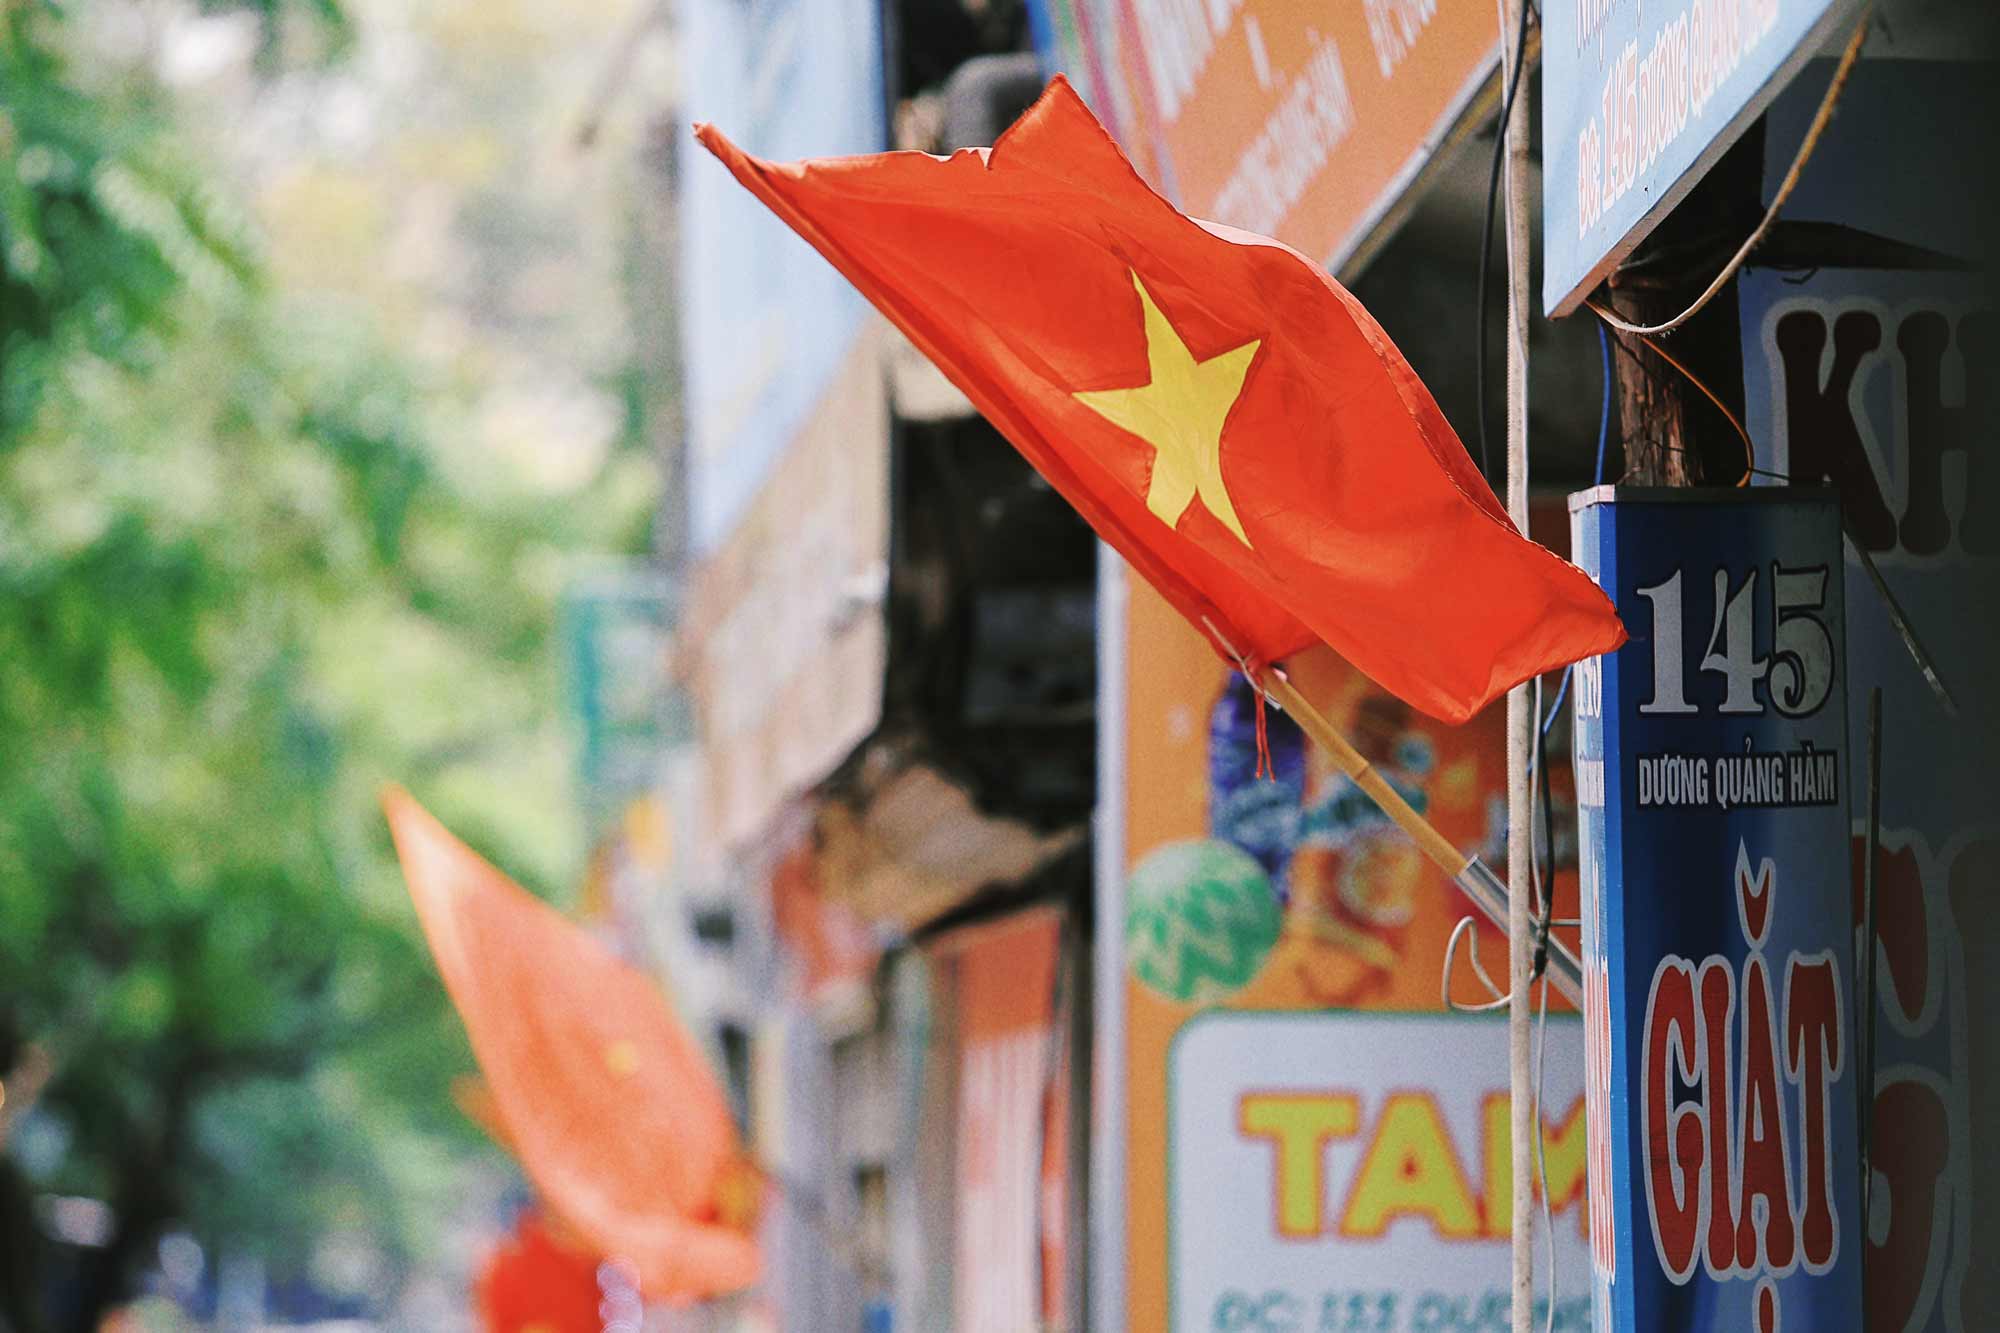 Tại khu vực dân cư phố Dương Quảng Hàm, các gia đình, hộ kinh doanh đều treo cờ Tổ quốc, như một cách thể hiện sự kính yêu, biết ơn công lao của Chủ tịch Hồ Chí Minh - người đã hiến dâng trọn cuộc đời mình vì độc lập dân tộc, tự do và hạnh phúc của Nhân dân.